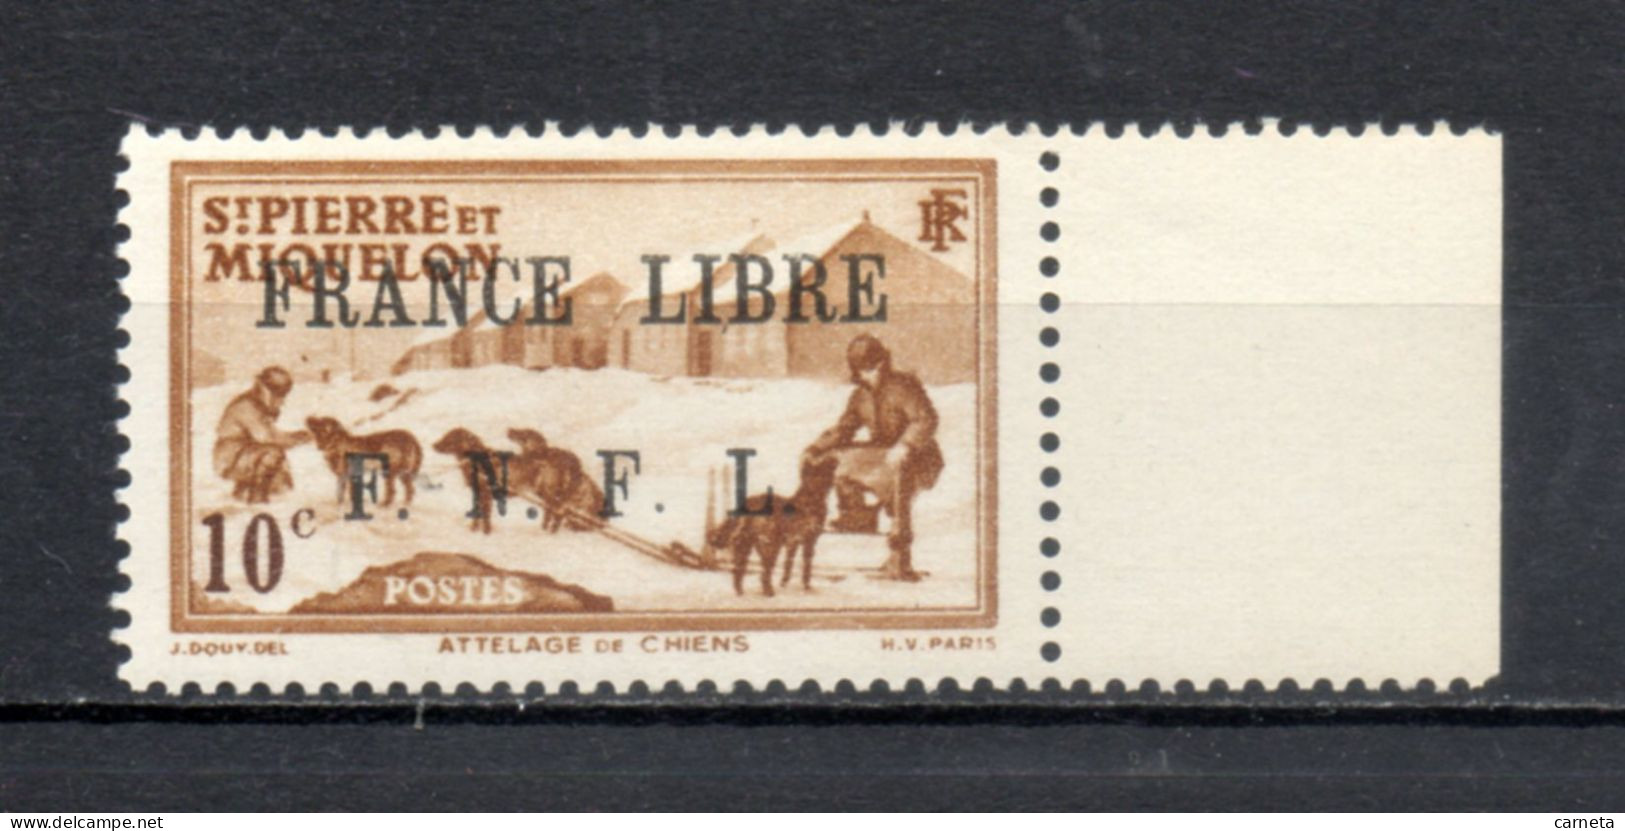 SAINT PIERRE ET MIQUELON N° 250  NEUF SANS CHARNIERE COTE  24.00€  ATTELAGE ANIMAUX - Unused Stamps